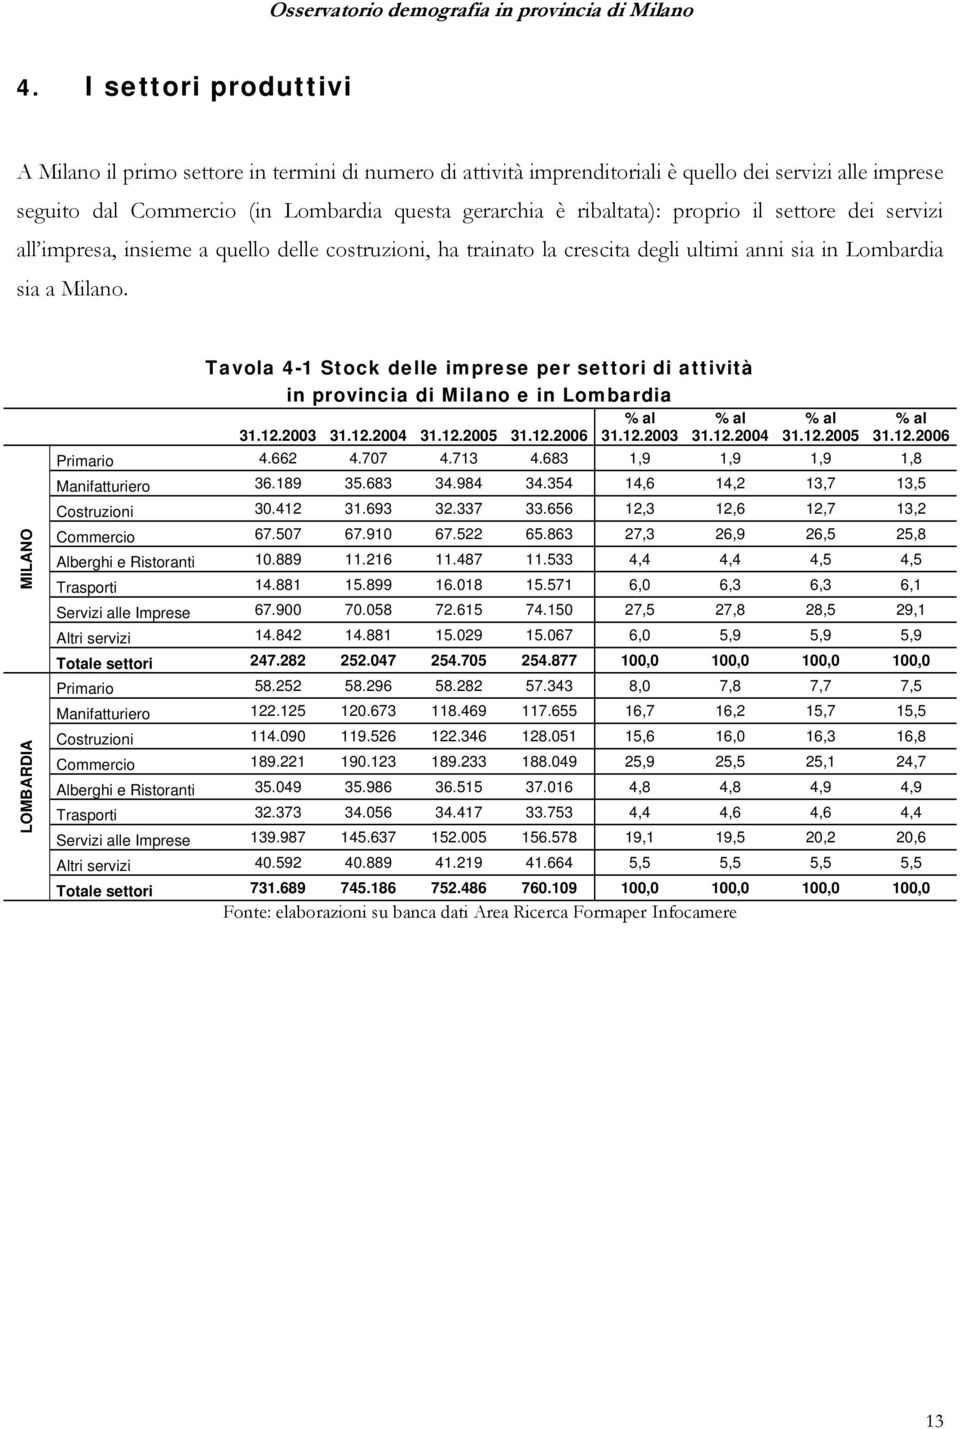 MILANO LOMBARDIA Tavola 4-1 Stock delle imprese per settori di attività in provincia di Milano e in Lombardia 31.12.2003 31.12.2004 31.12.2005 31.12.2006 % al 31.12.2003 % al 31.12.2004 % al 31.12.2005 % al 31.